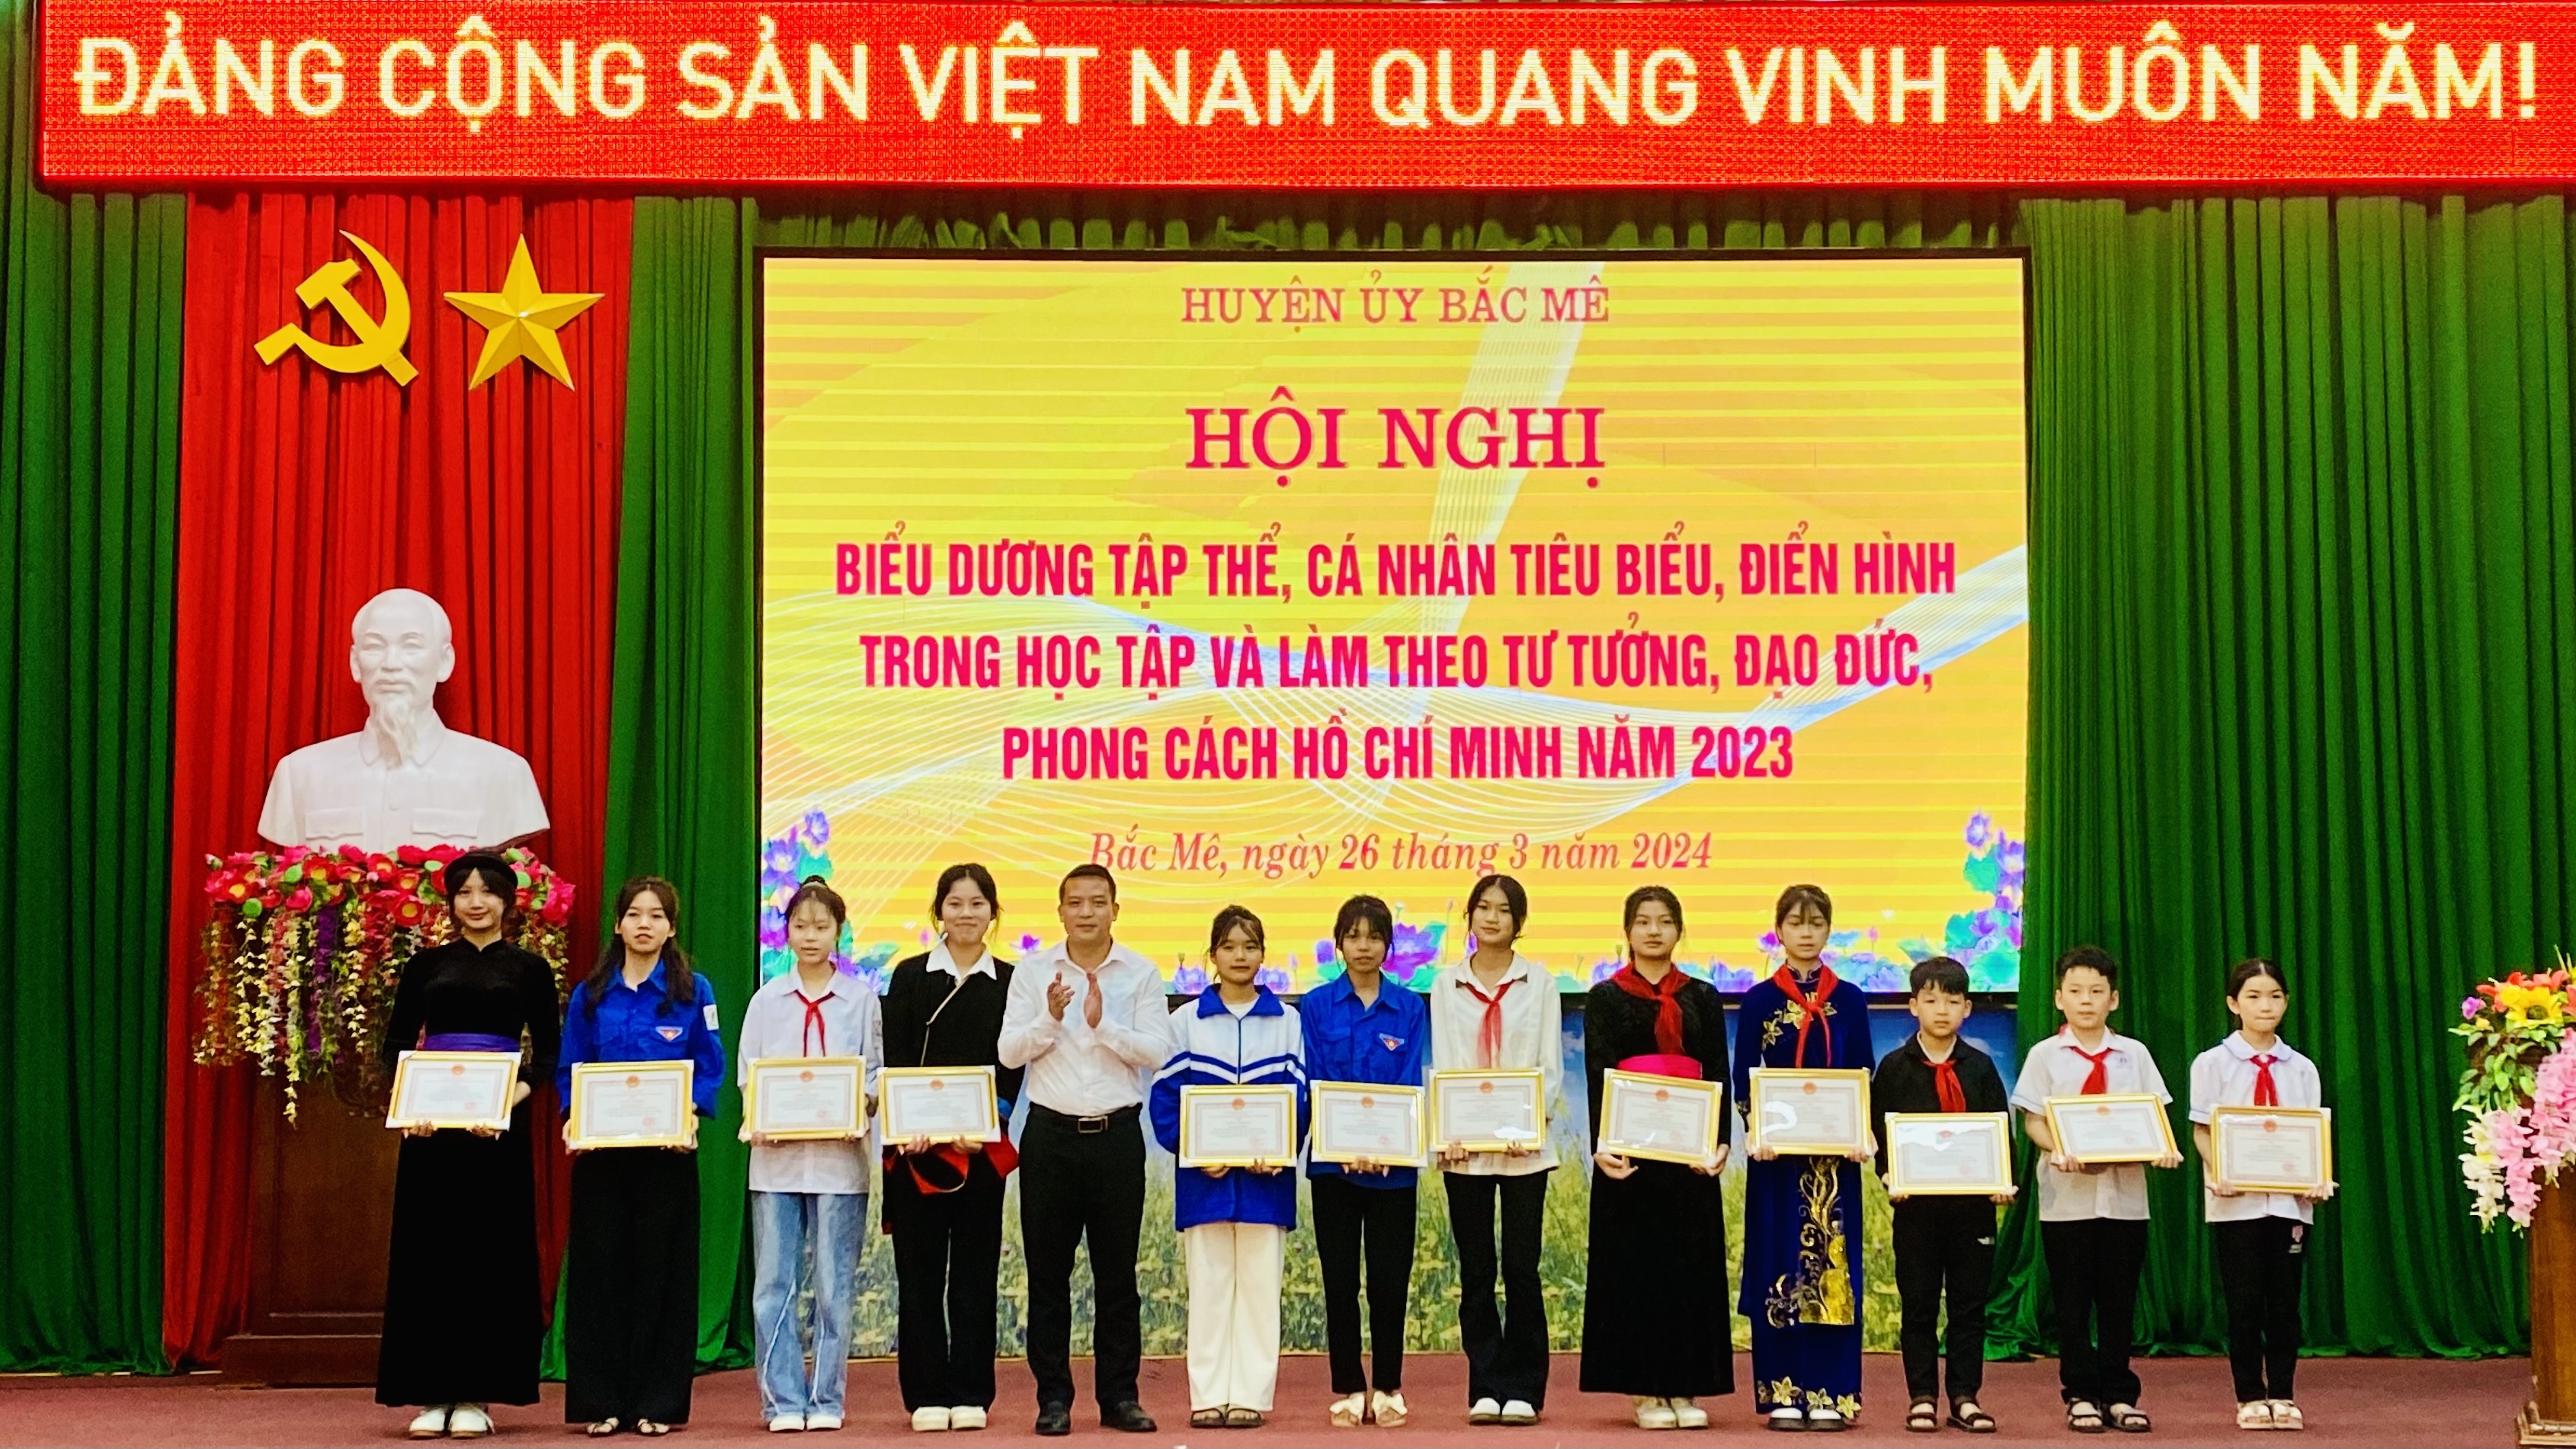 Bắc Mê: Biểu dương, khen thưởng các tập thể, cá nhân tiêu biểu, điển hình trong học tập và làm theo tư tưởng, đạo đức, phong cách Hồ Chí Minh năm 2023